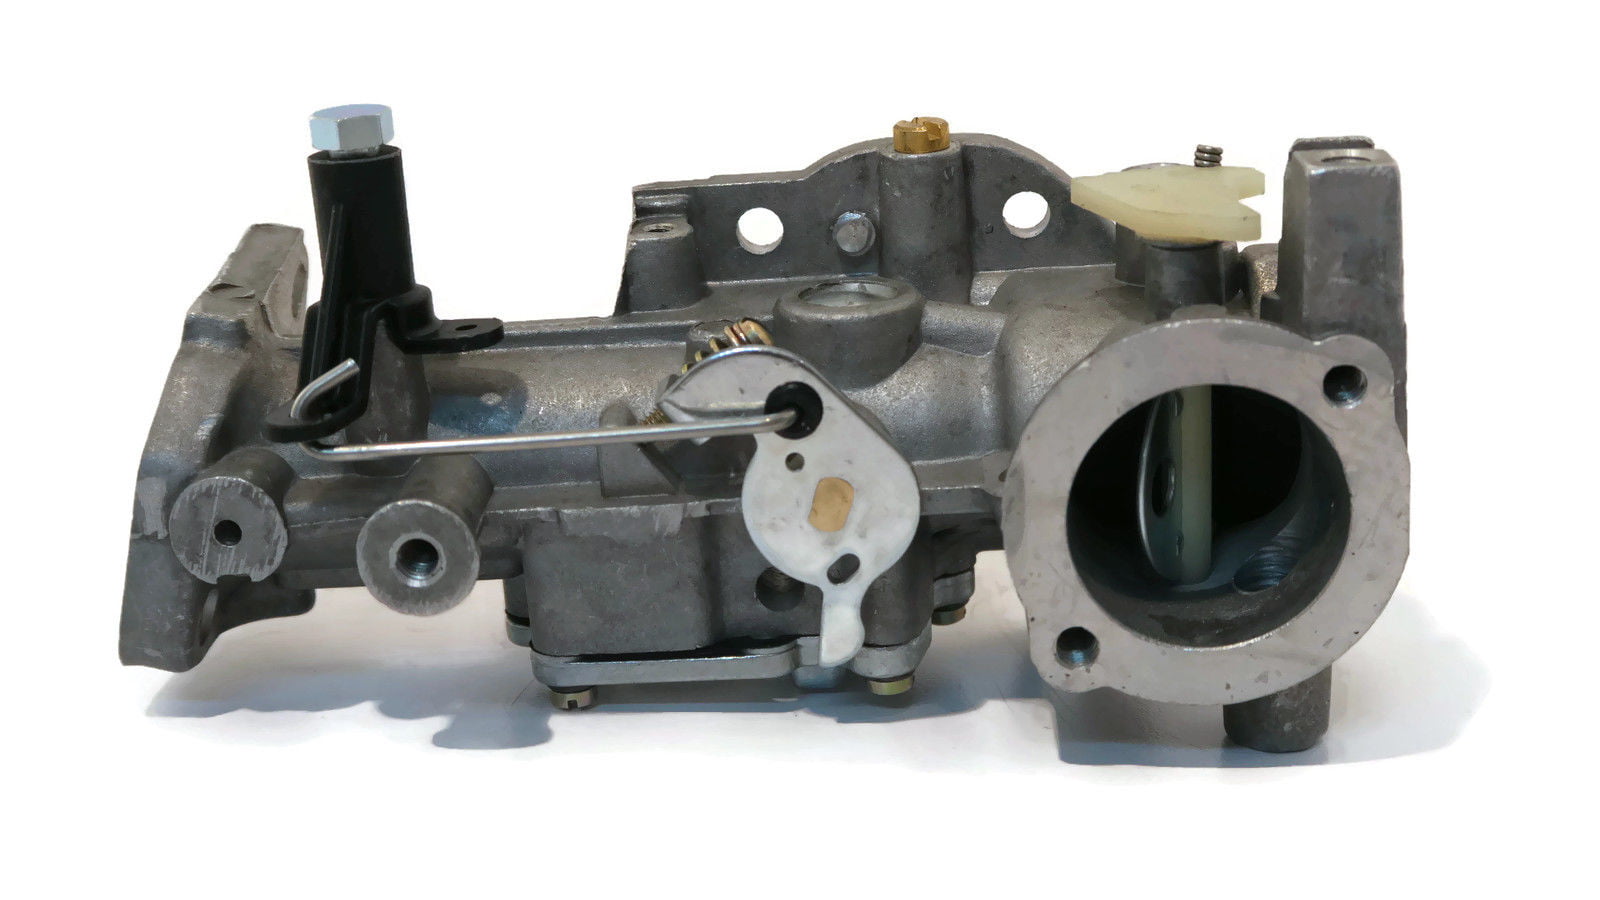 Kit carburador carburador para motores Briggs Stratton 5HP 498298 495426  692784 495951 carbohidratos : : Jardín